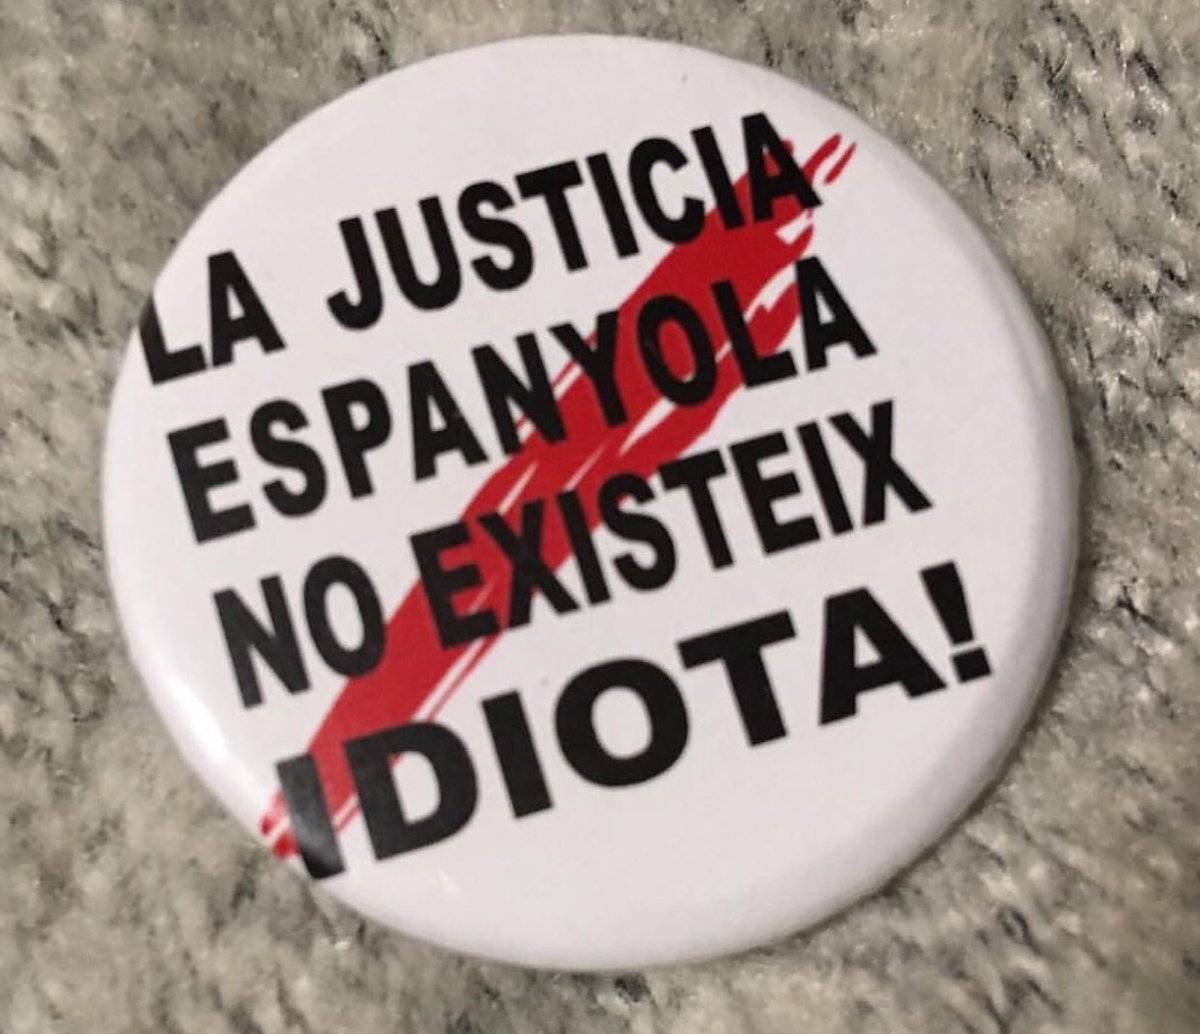 "La Justícia espanyola no existeix, idiota!"